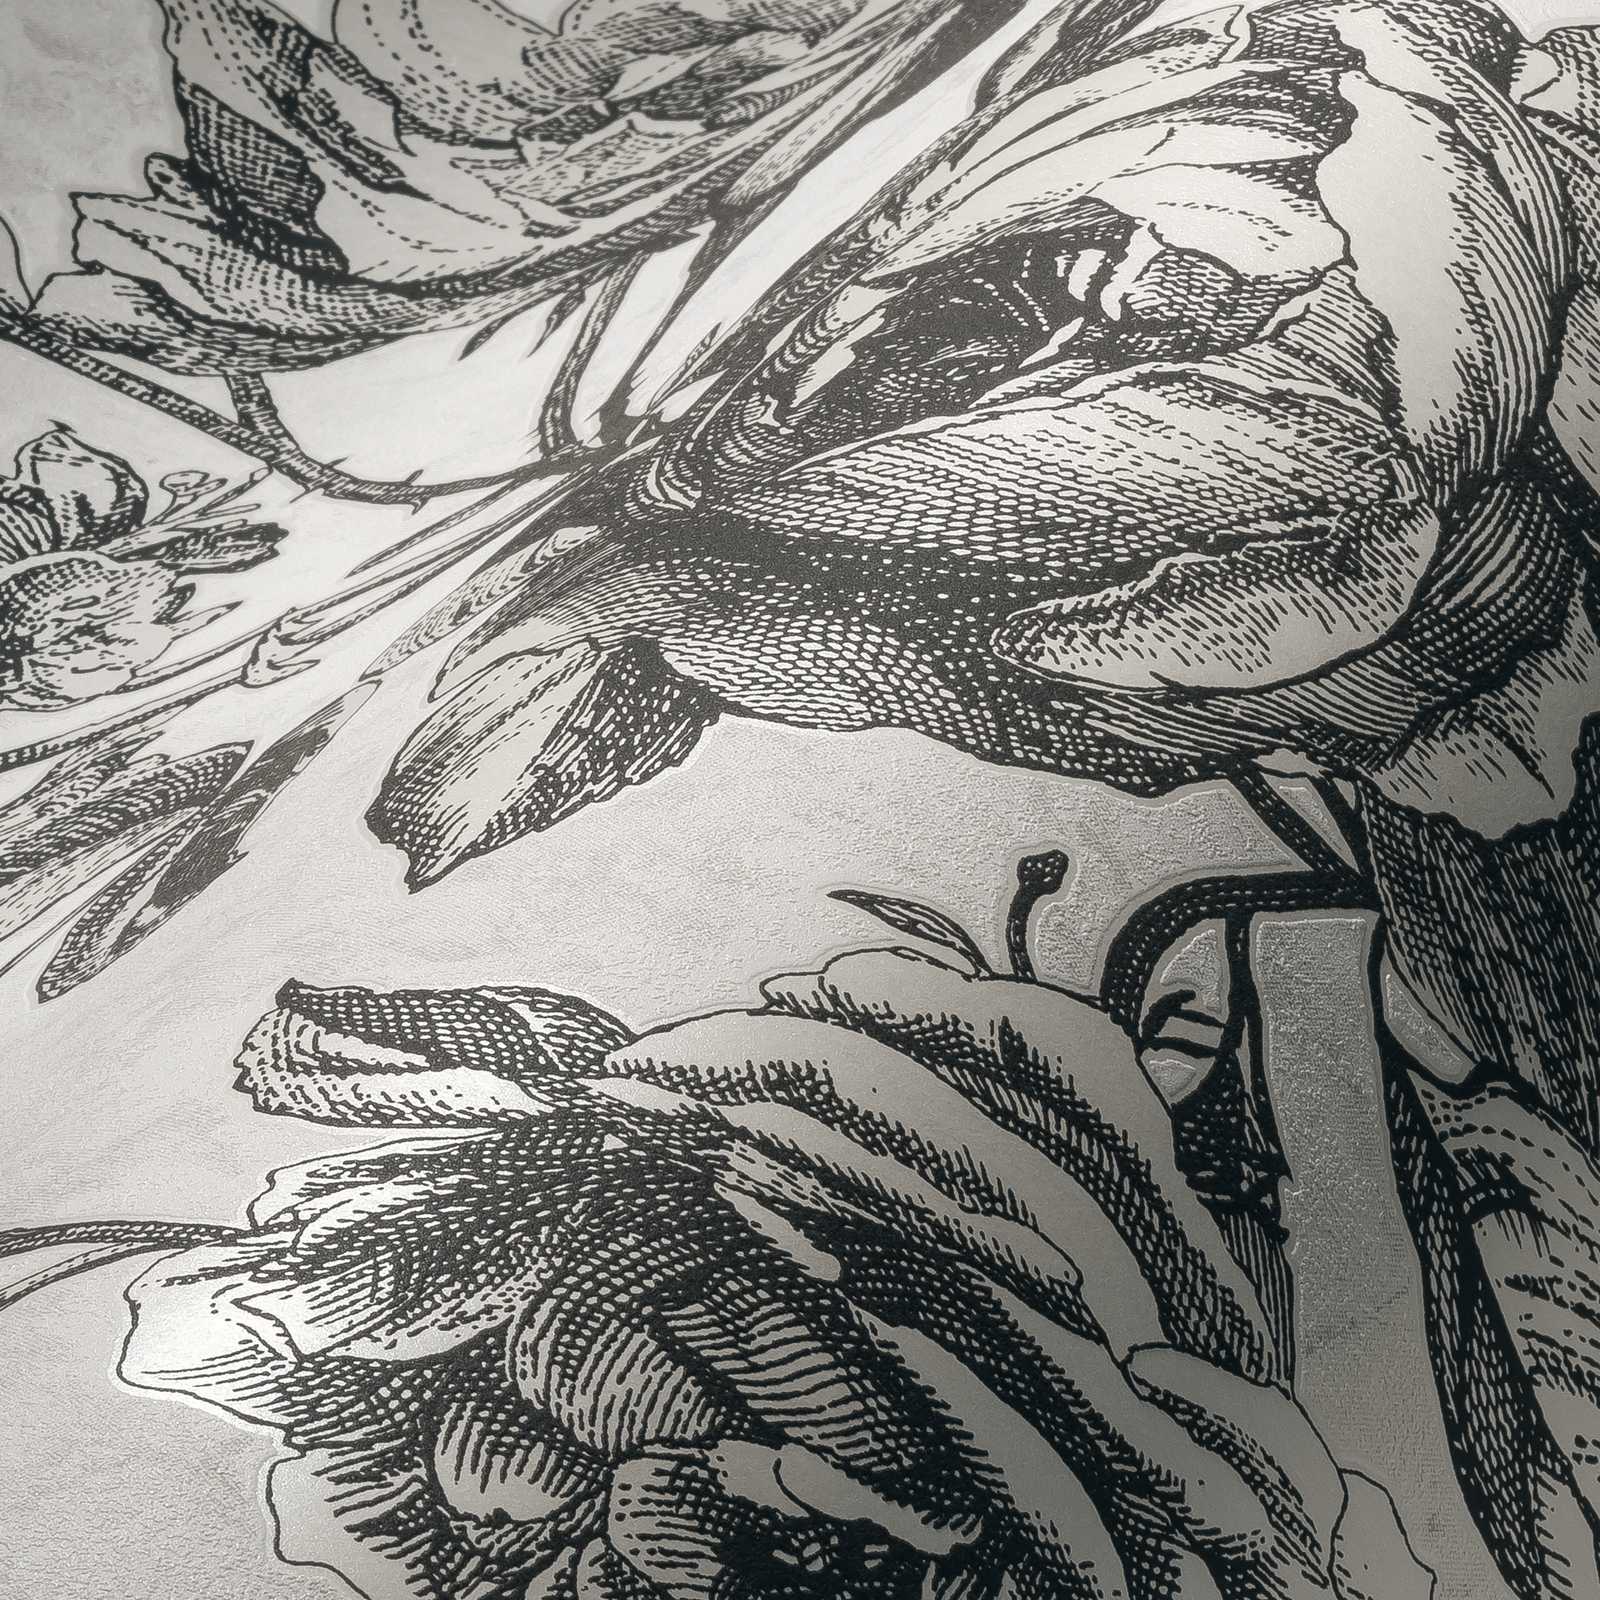             Schwarz-Creme Tapete Rosen Blütenmuster – Weiß, Schwarz, Grau
        